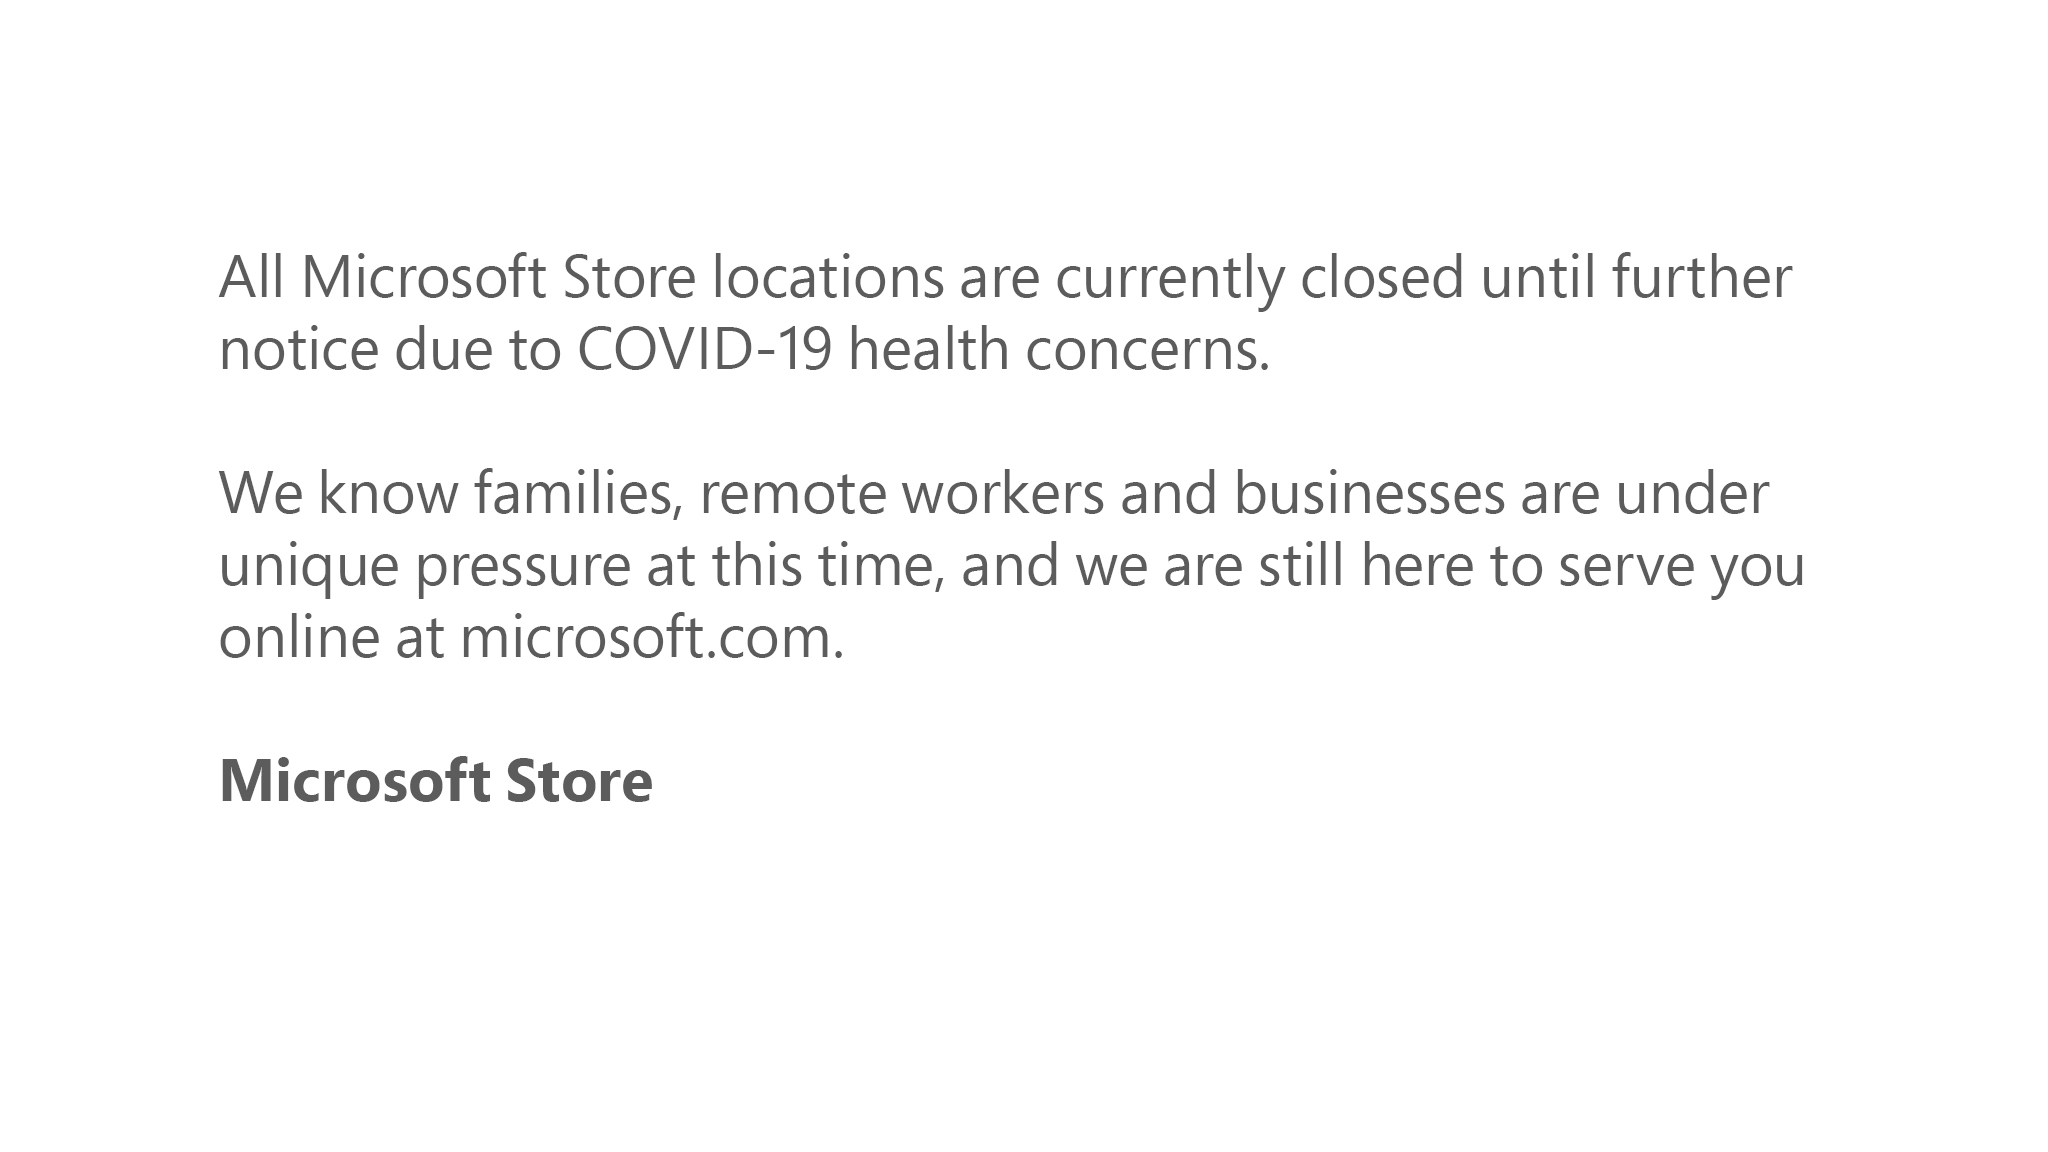 Microsoft因应COVID-19大流行2关闭全球所有Microsoft Store地点